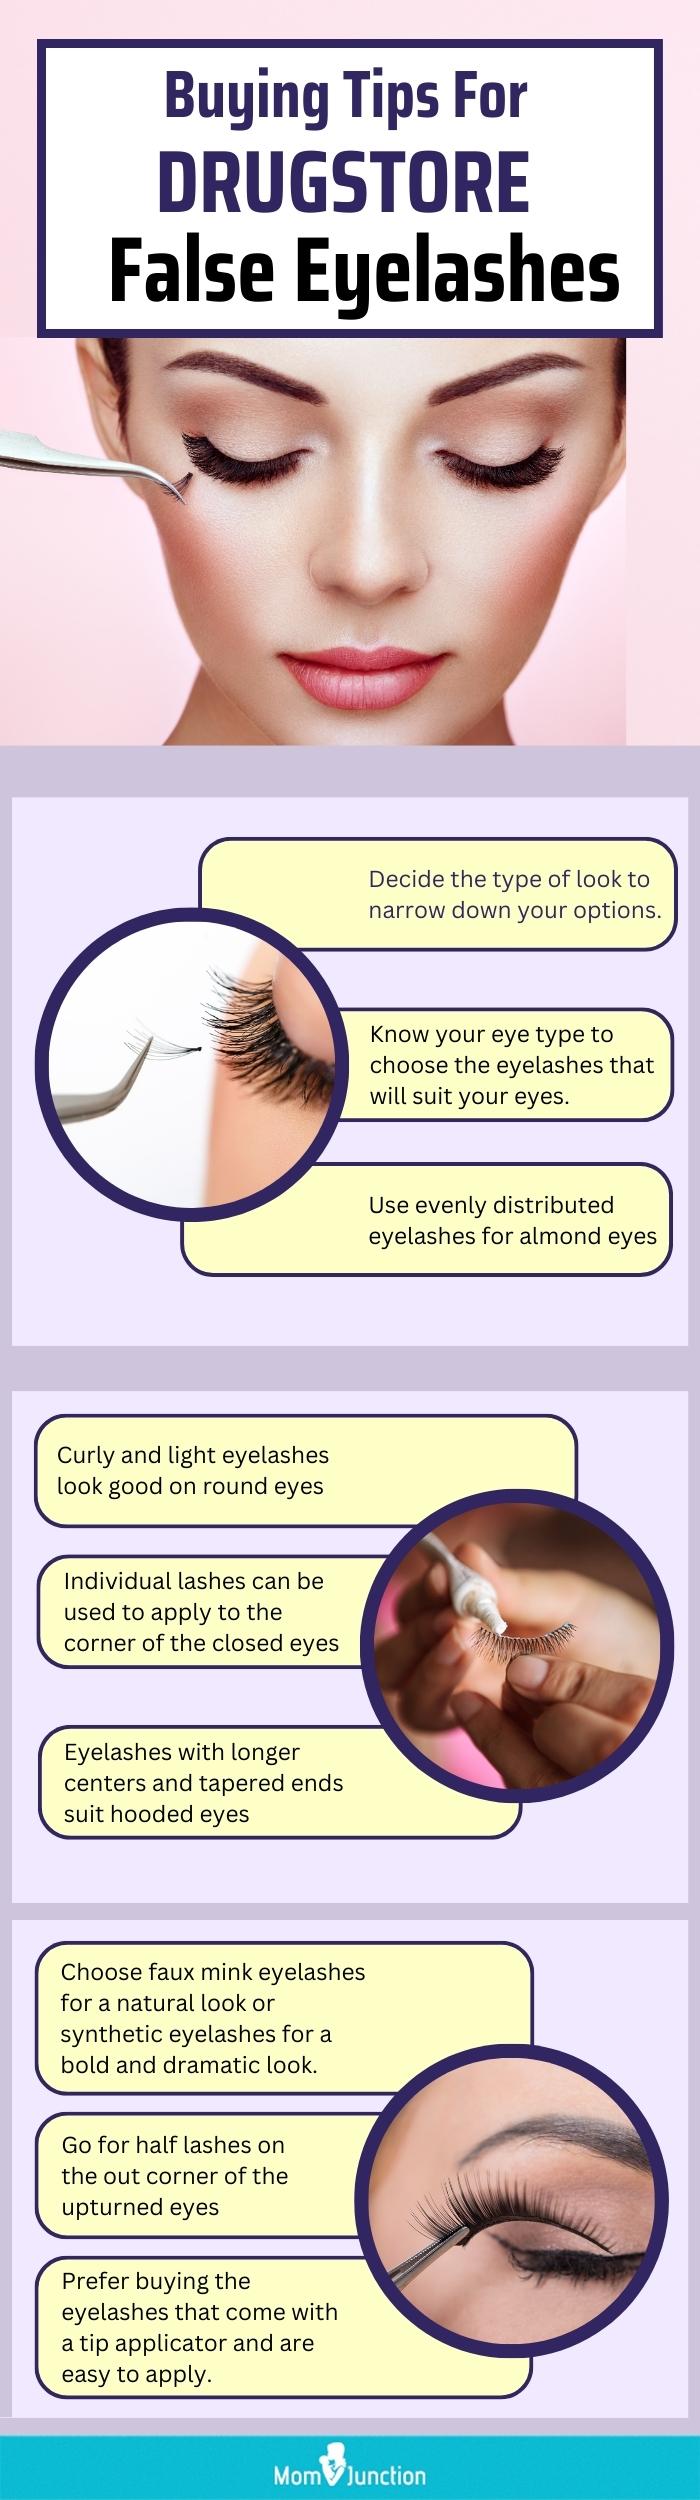 Buying Tips For Drugstore False Eyelashes (infographic)